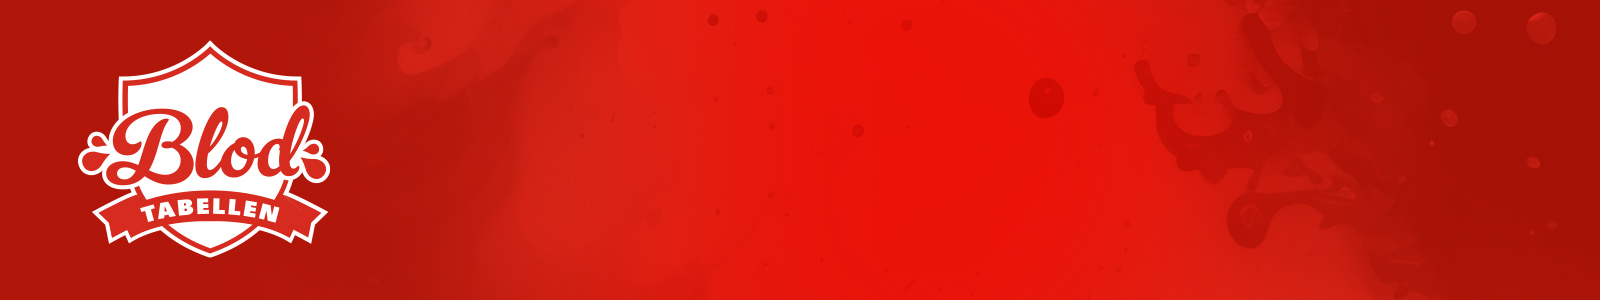 logo på rød bakgrunn